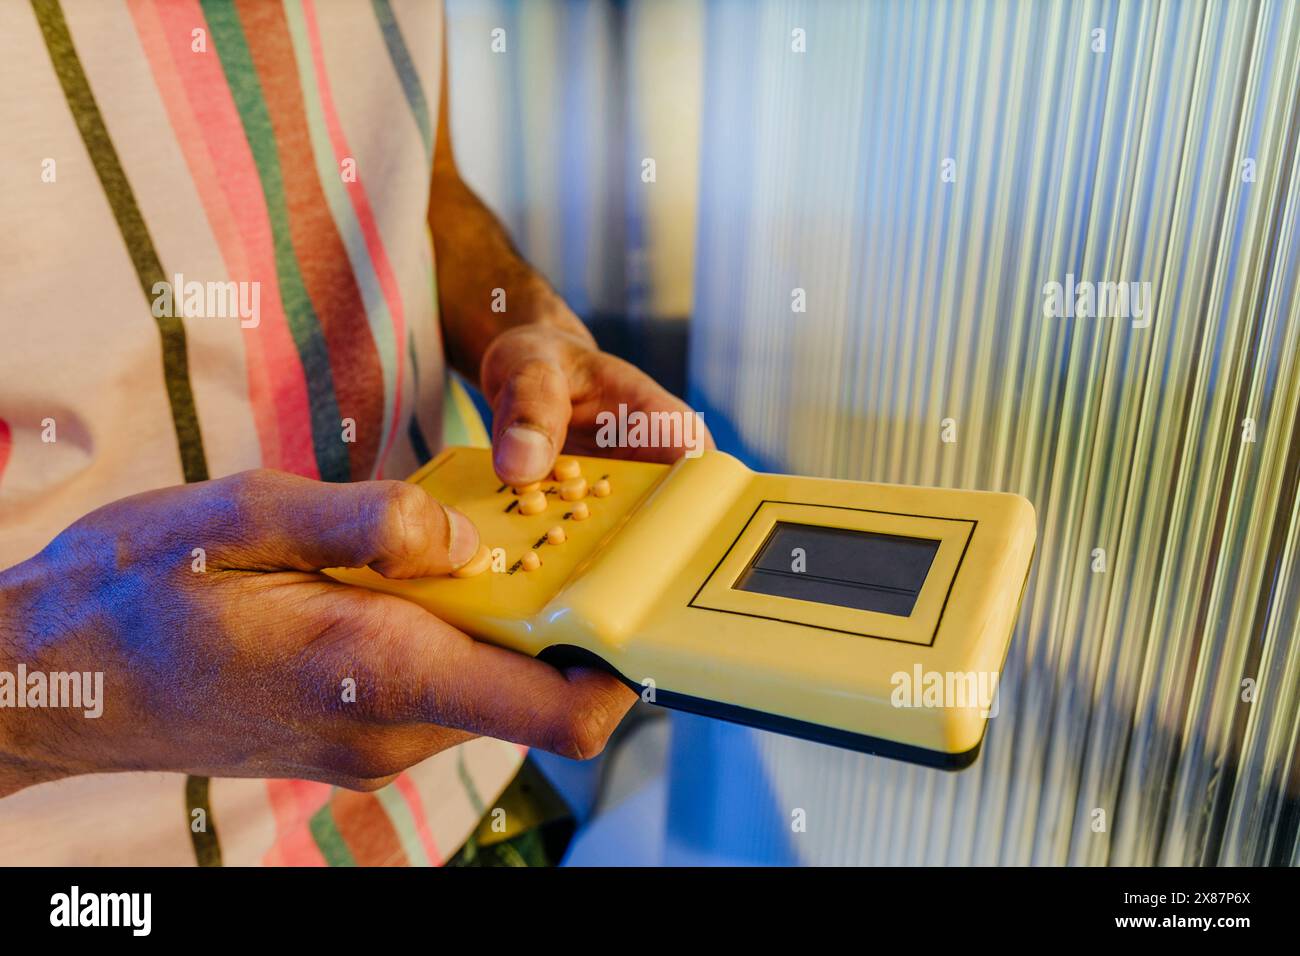 Homme jouant à un jeu portable de couleur jaune près d'un mur rayé Banque D'Images